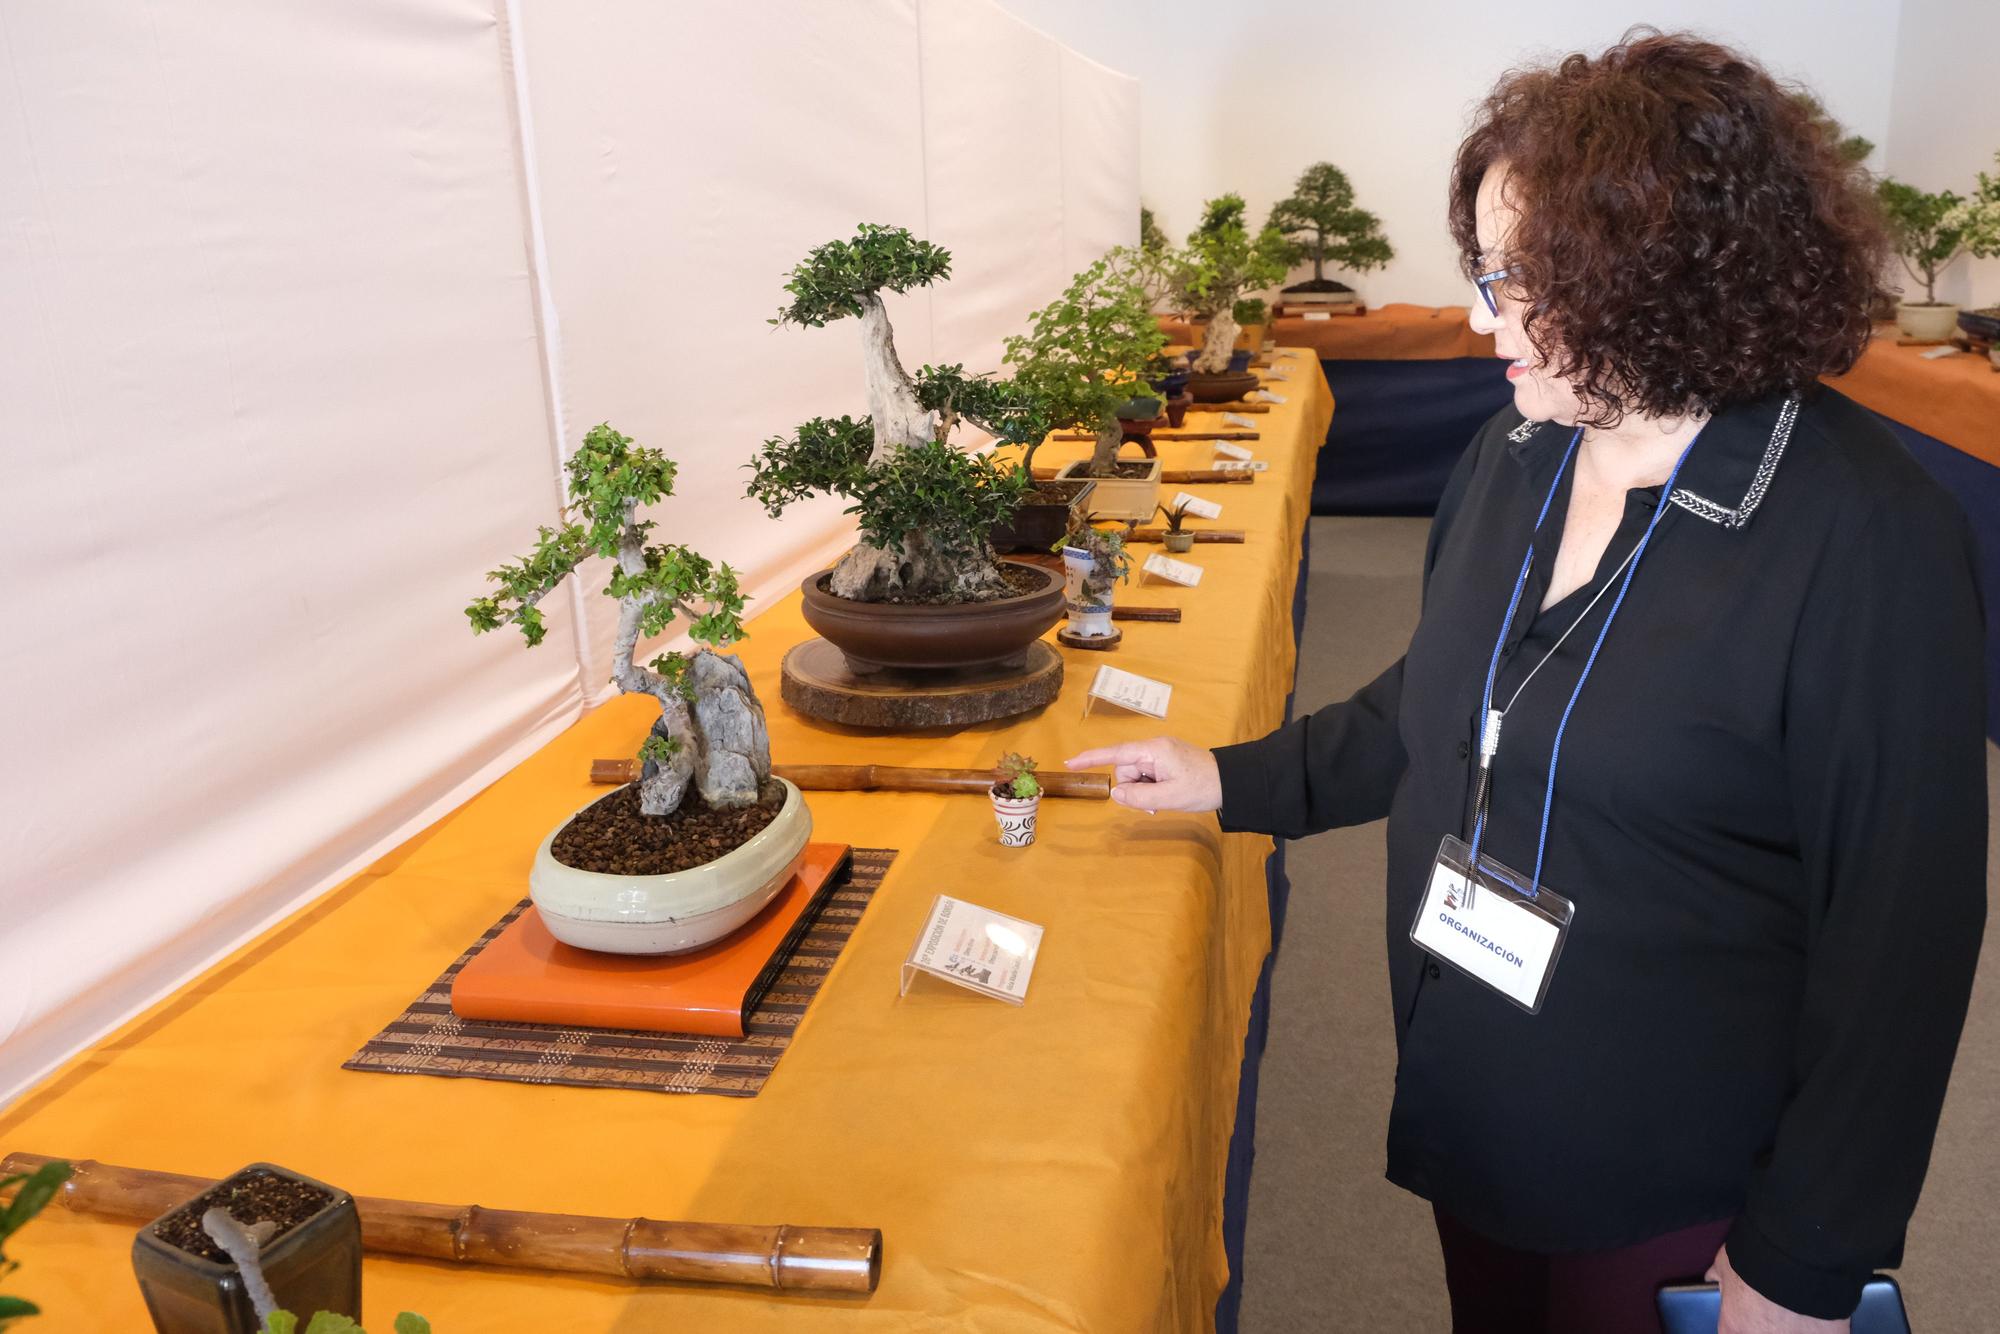 El arte del bonsai se expone en Elche